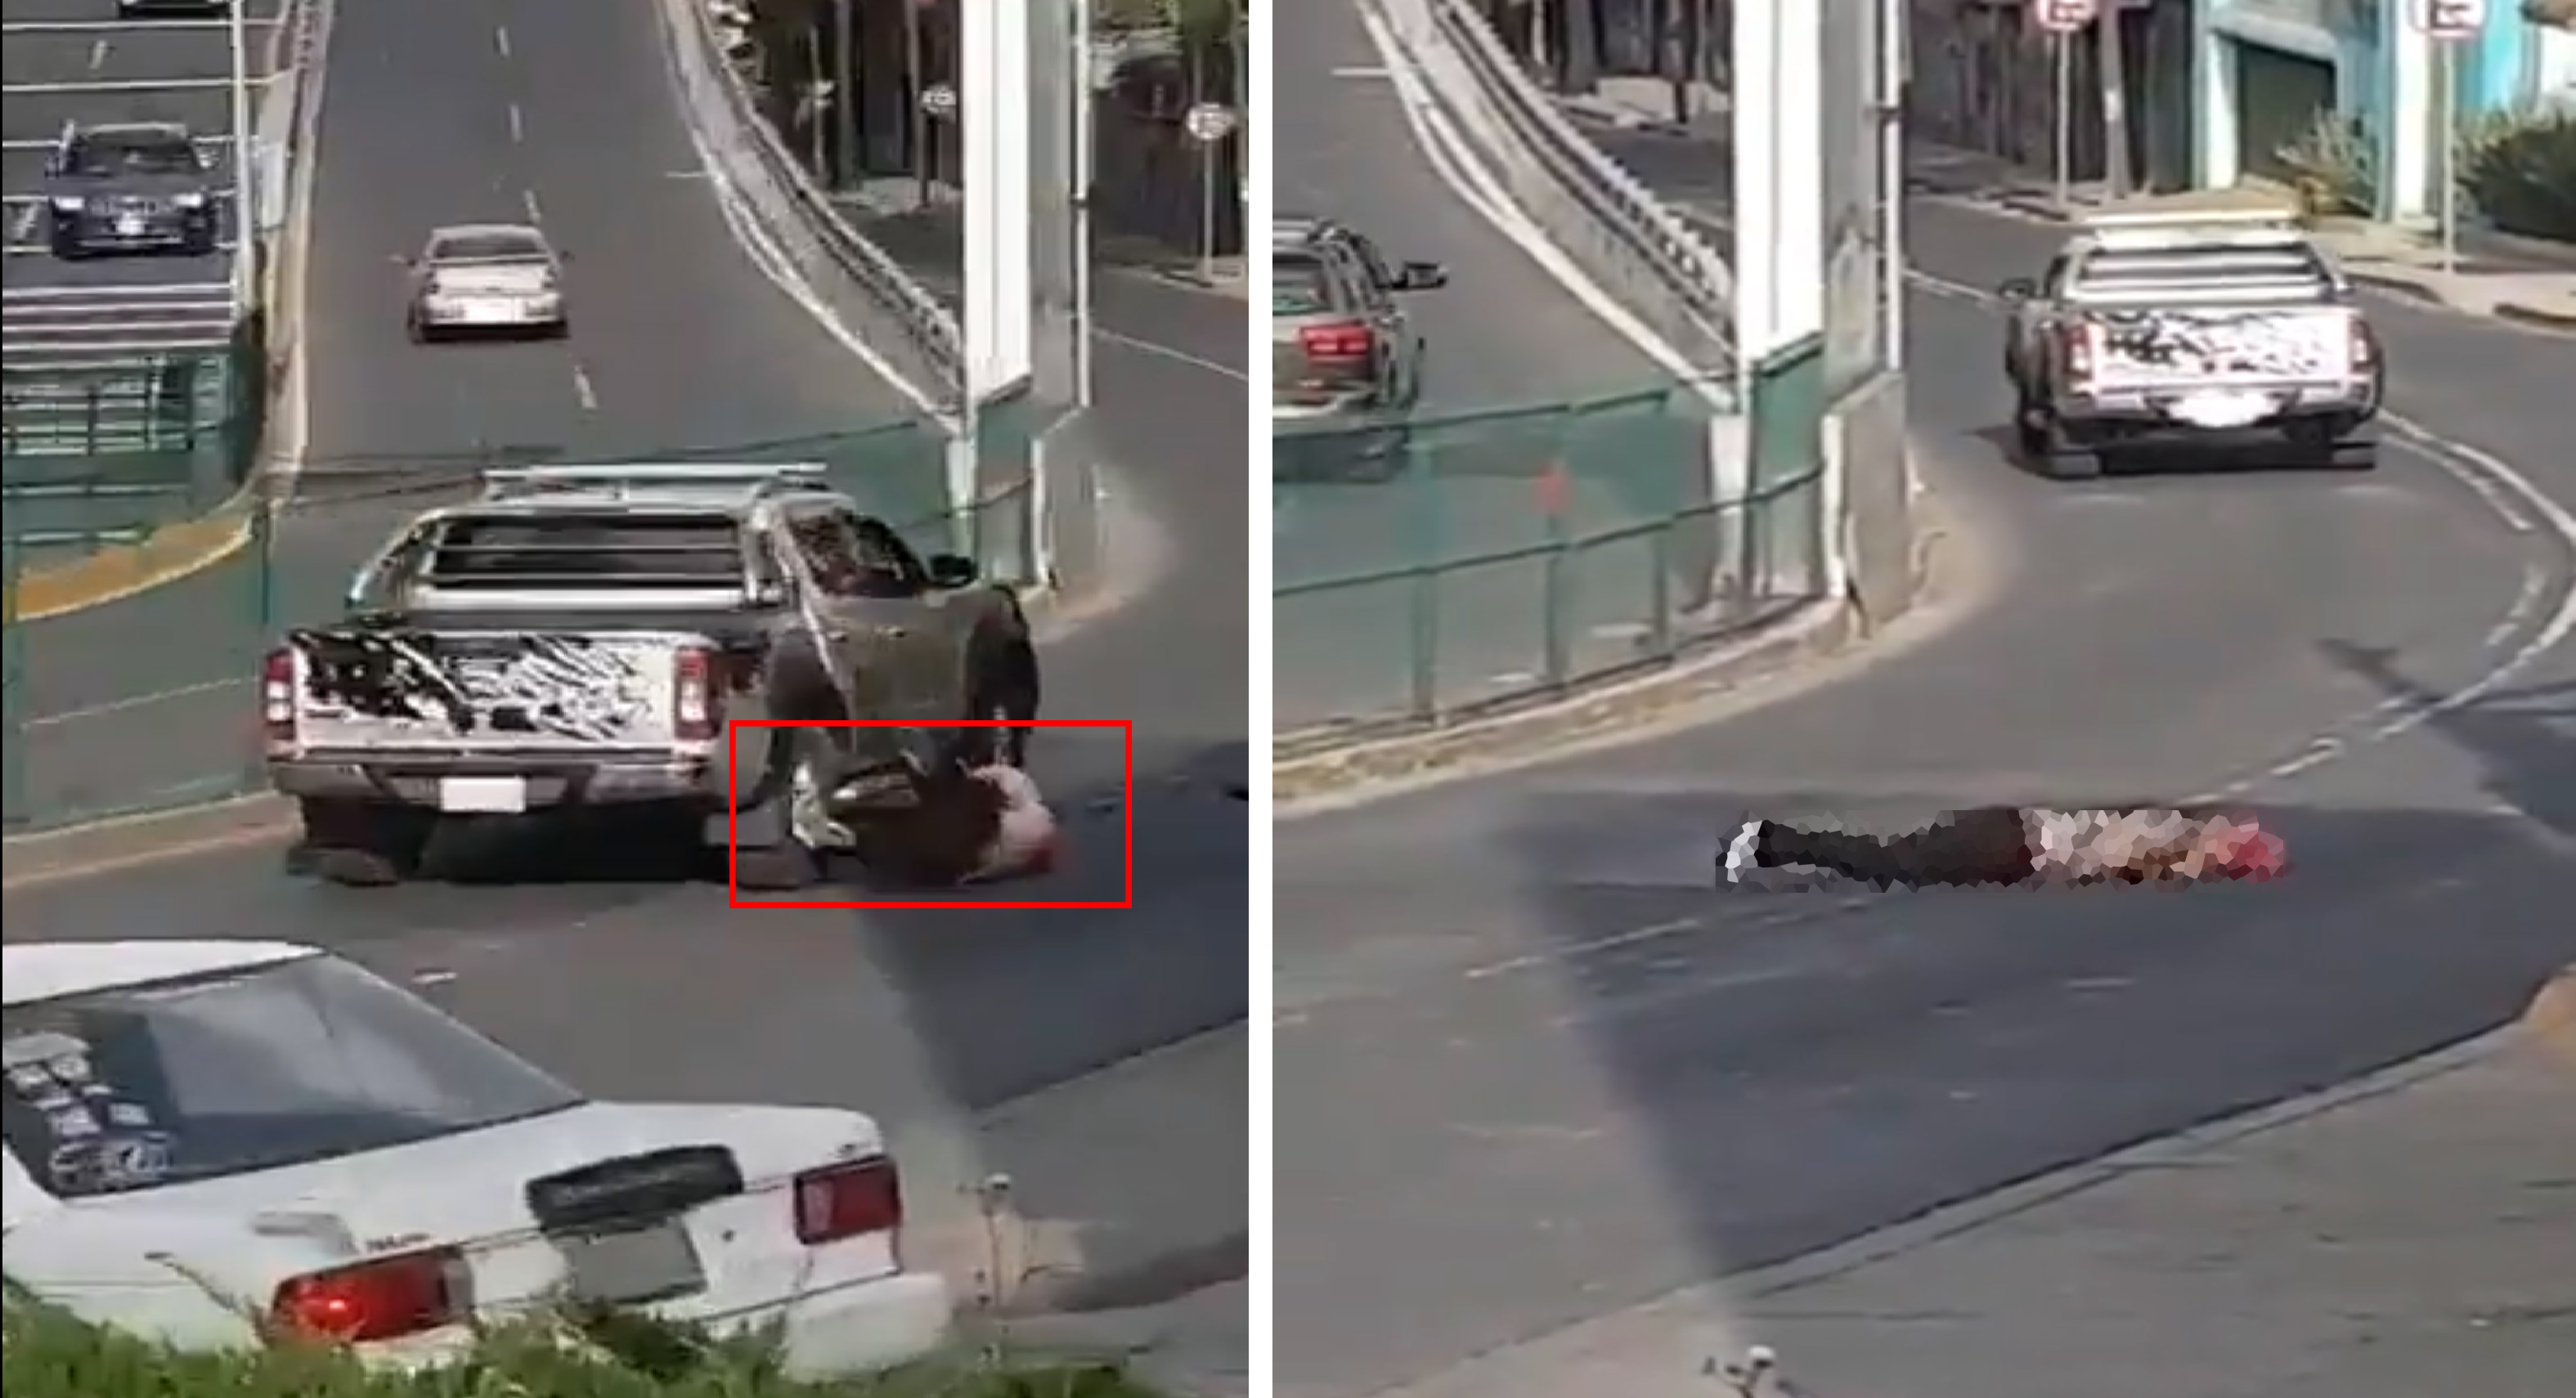 Mujer queda inconsciente tras ser atropellada por camioneta || VIDEO